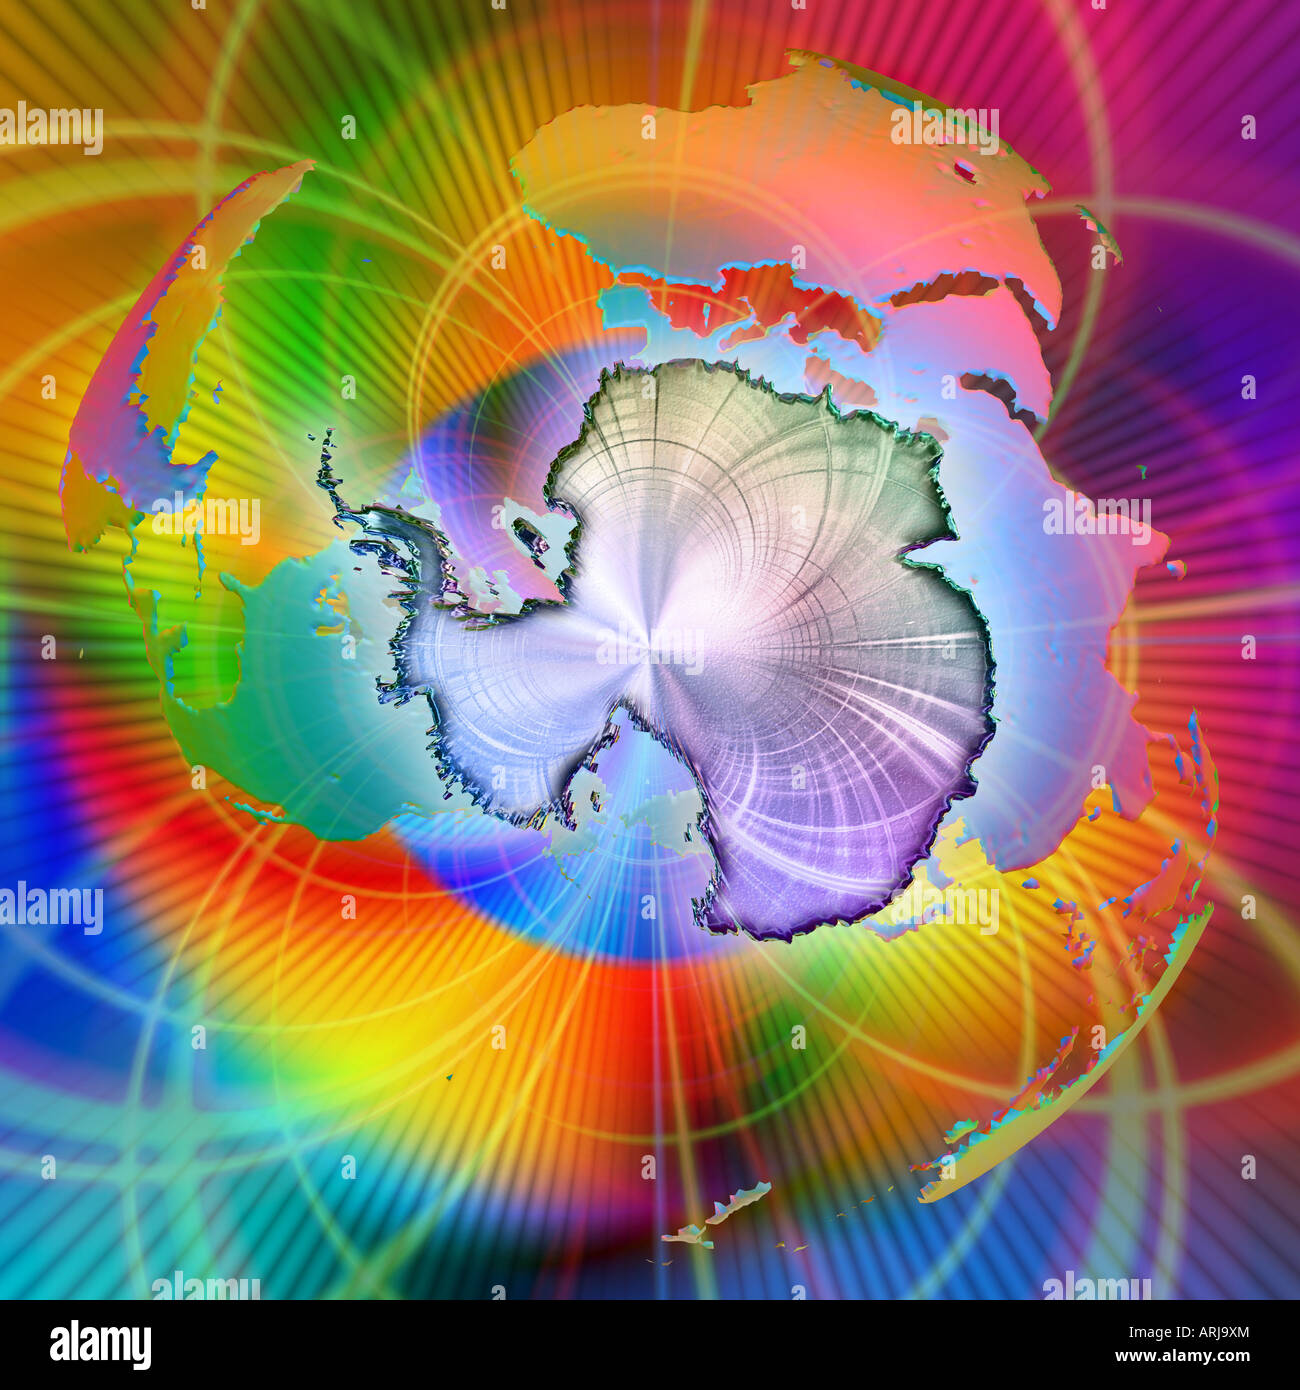 Belle composition lumineuse et dynamique centrée sur une interprétation stylisée de l'Antarctique Banque D'Images